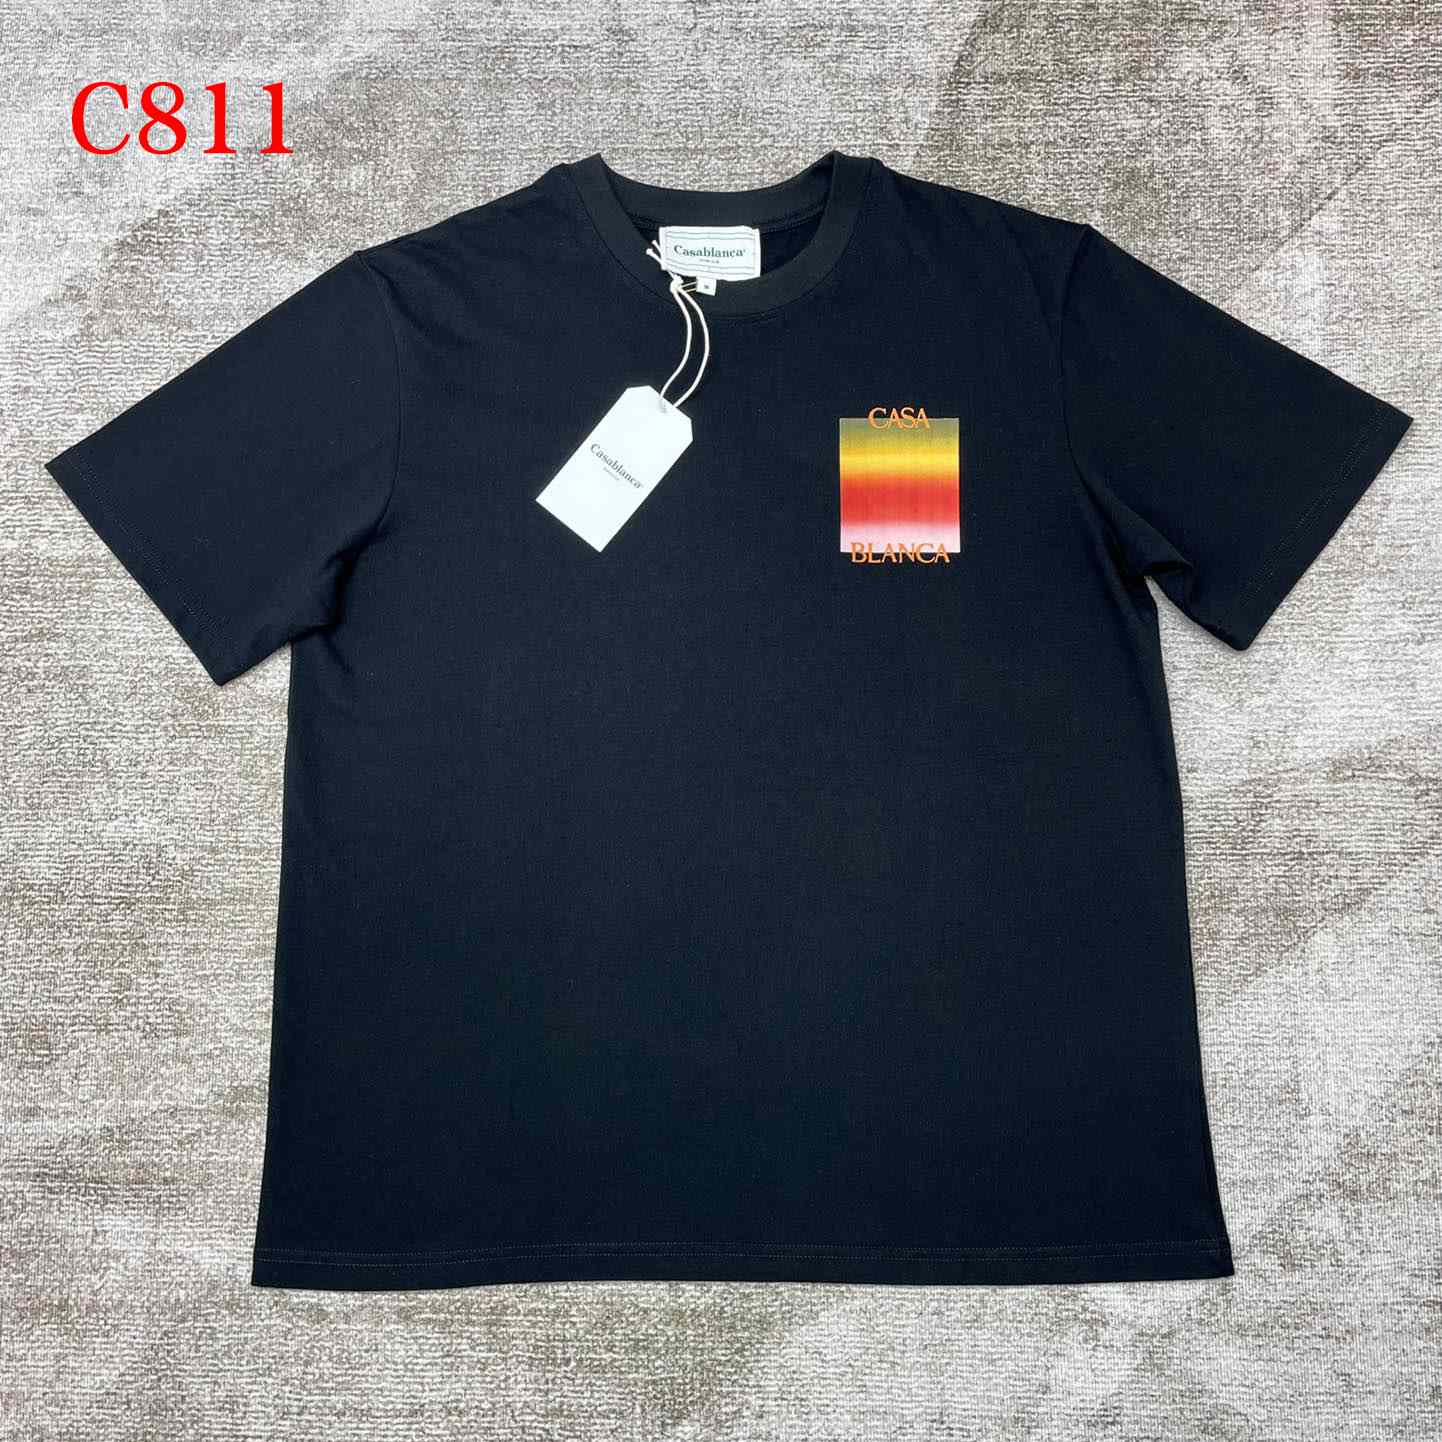 Casablanca Cotton T-shirt   C811 - DesignerGu